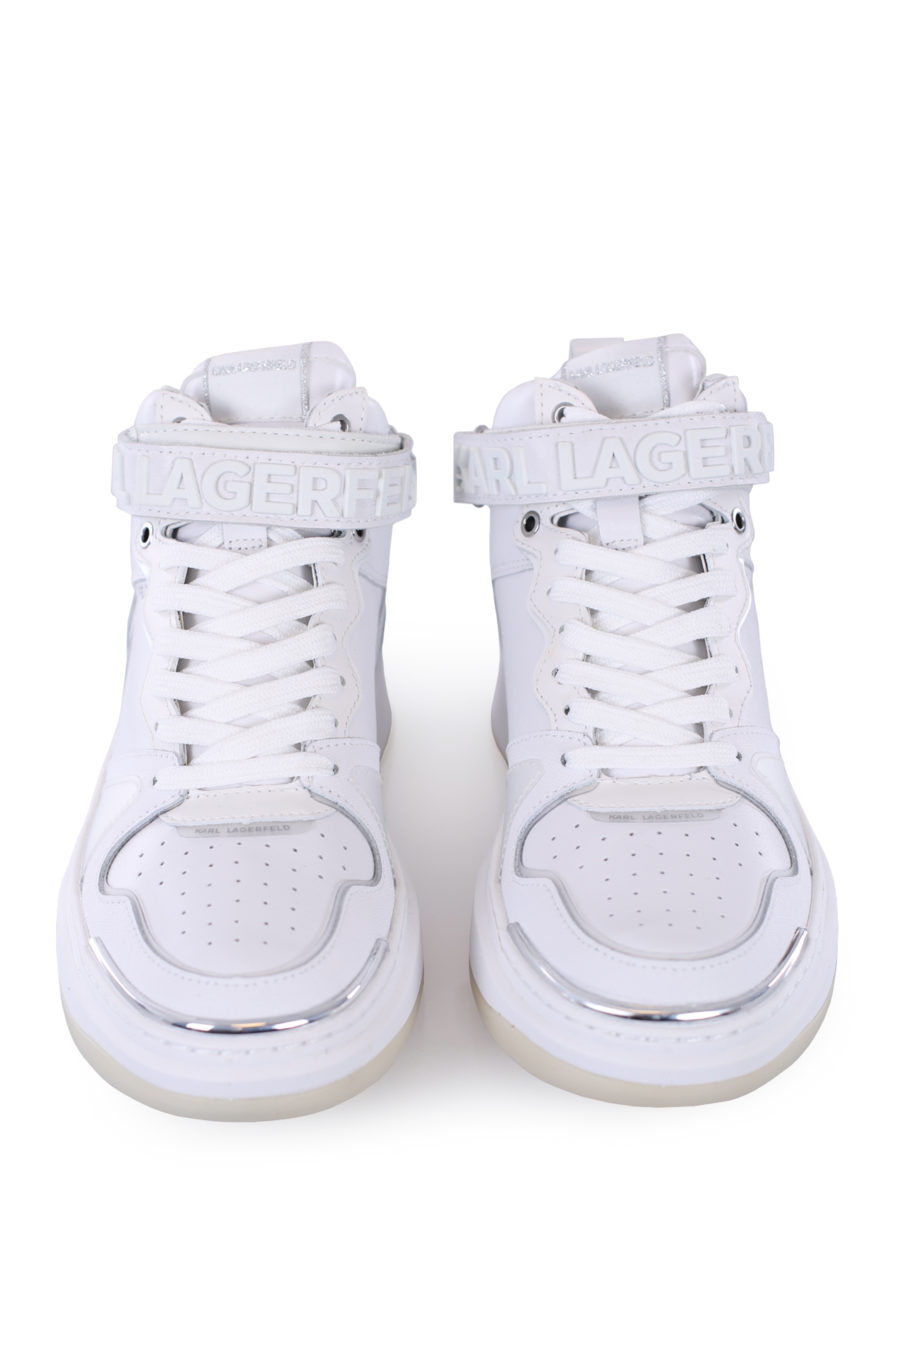 Zapatillas blancas y plateado con logo engomado en velcro - IMG 0293